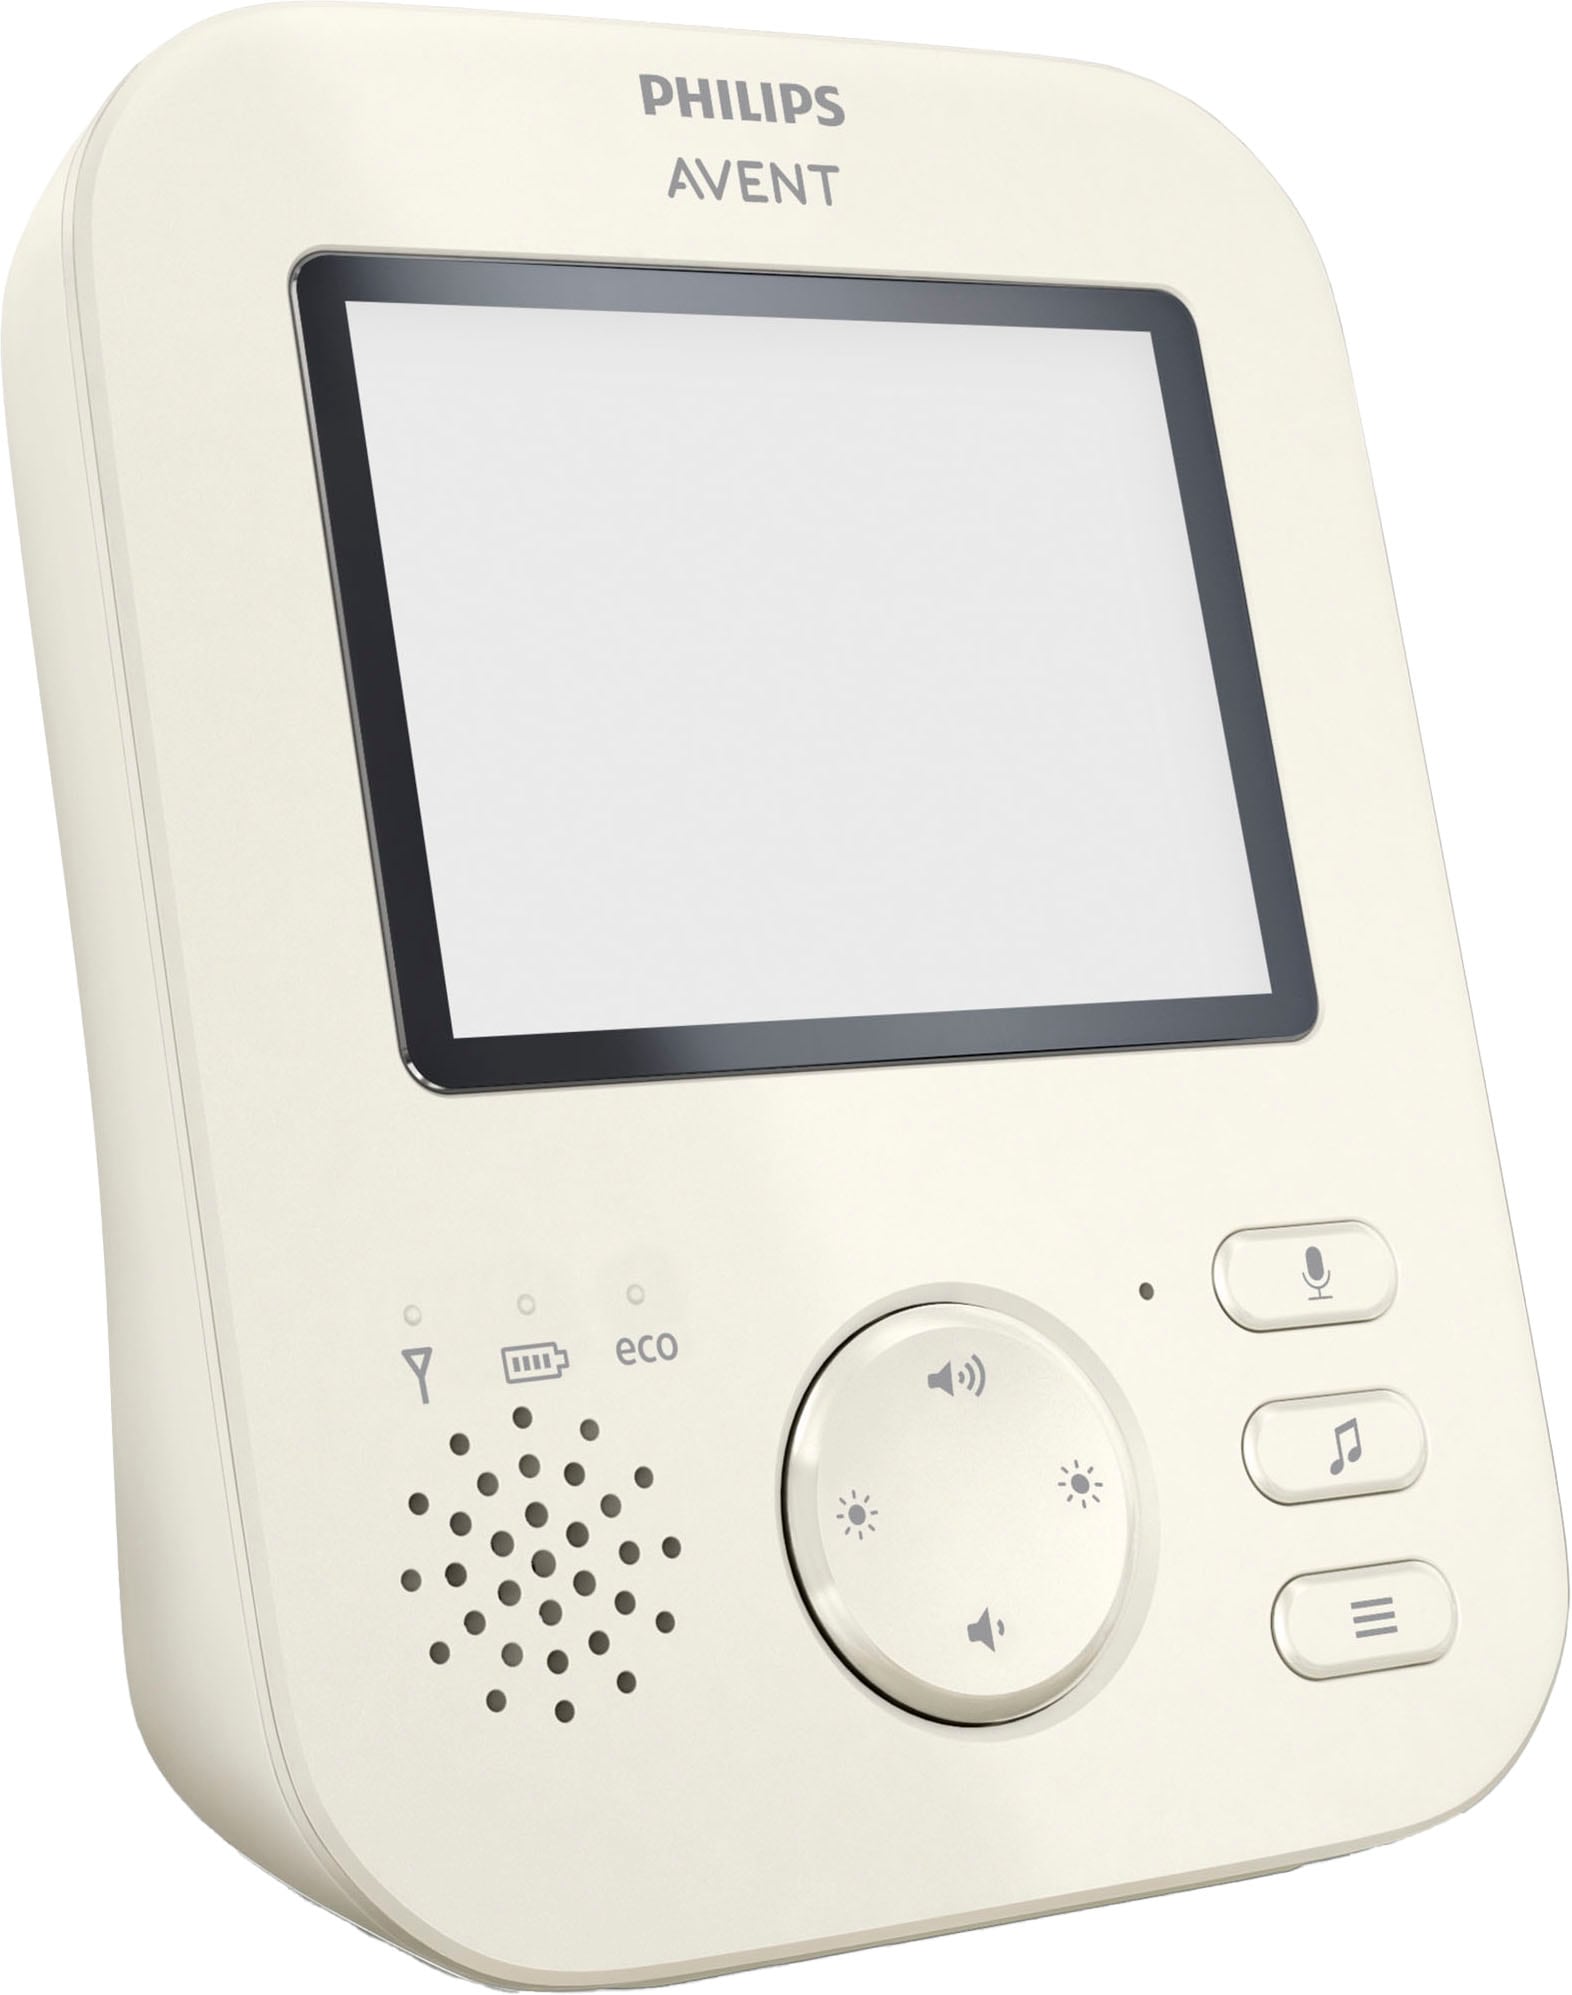 Philips AVENT Babyphone SCD713/26, mit Gegensprechfunktion und